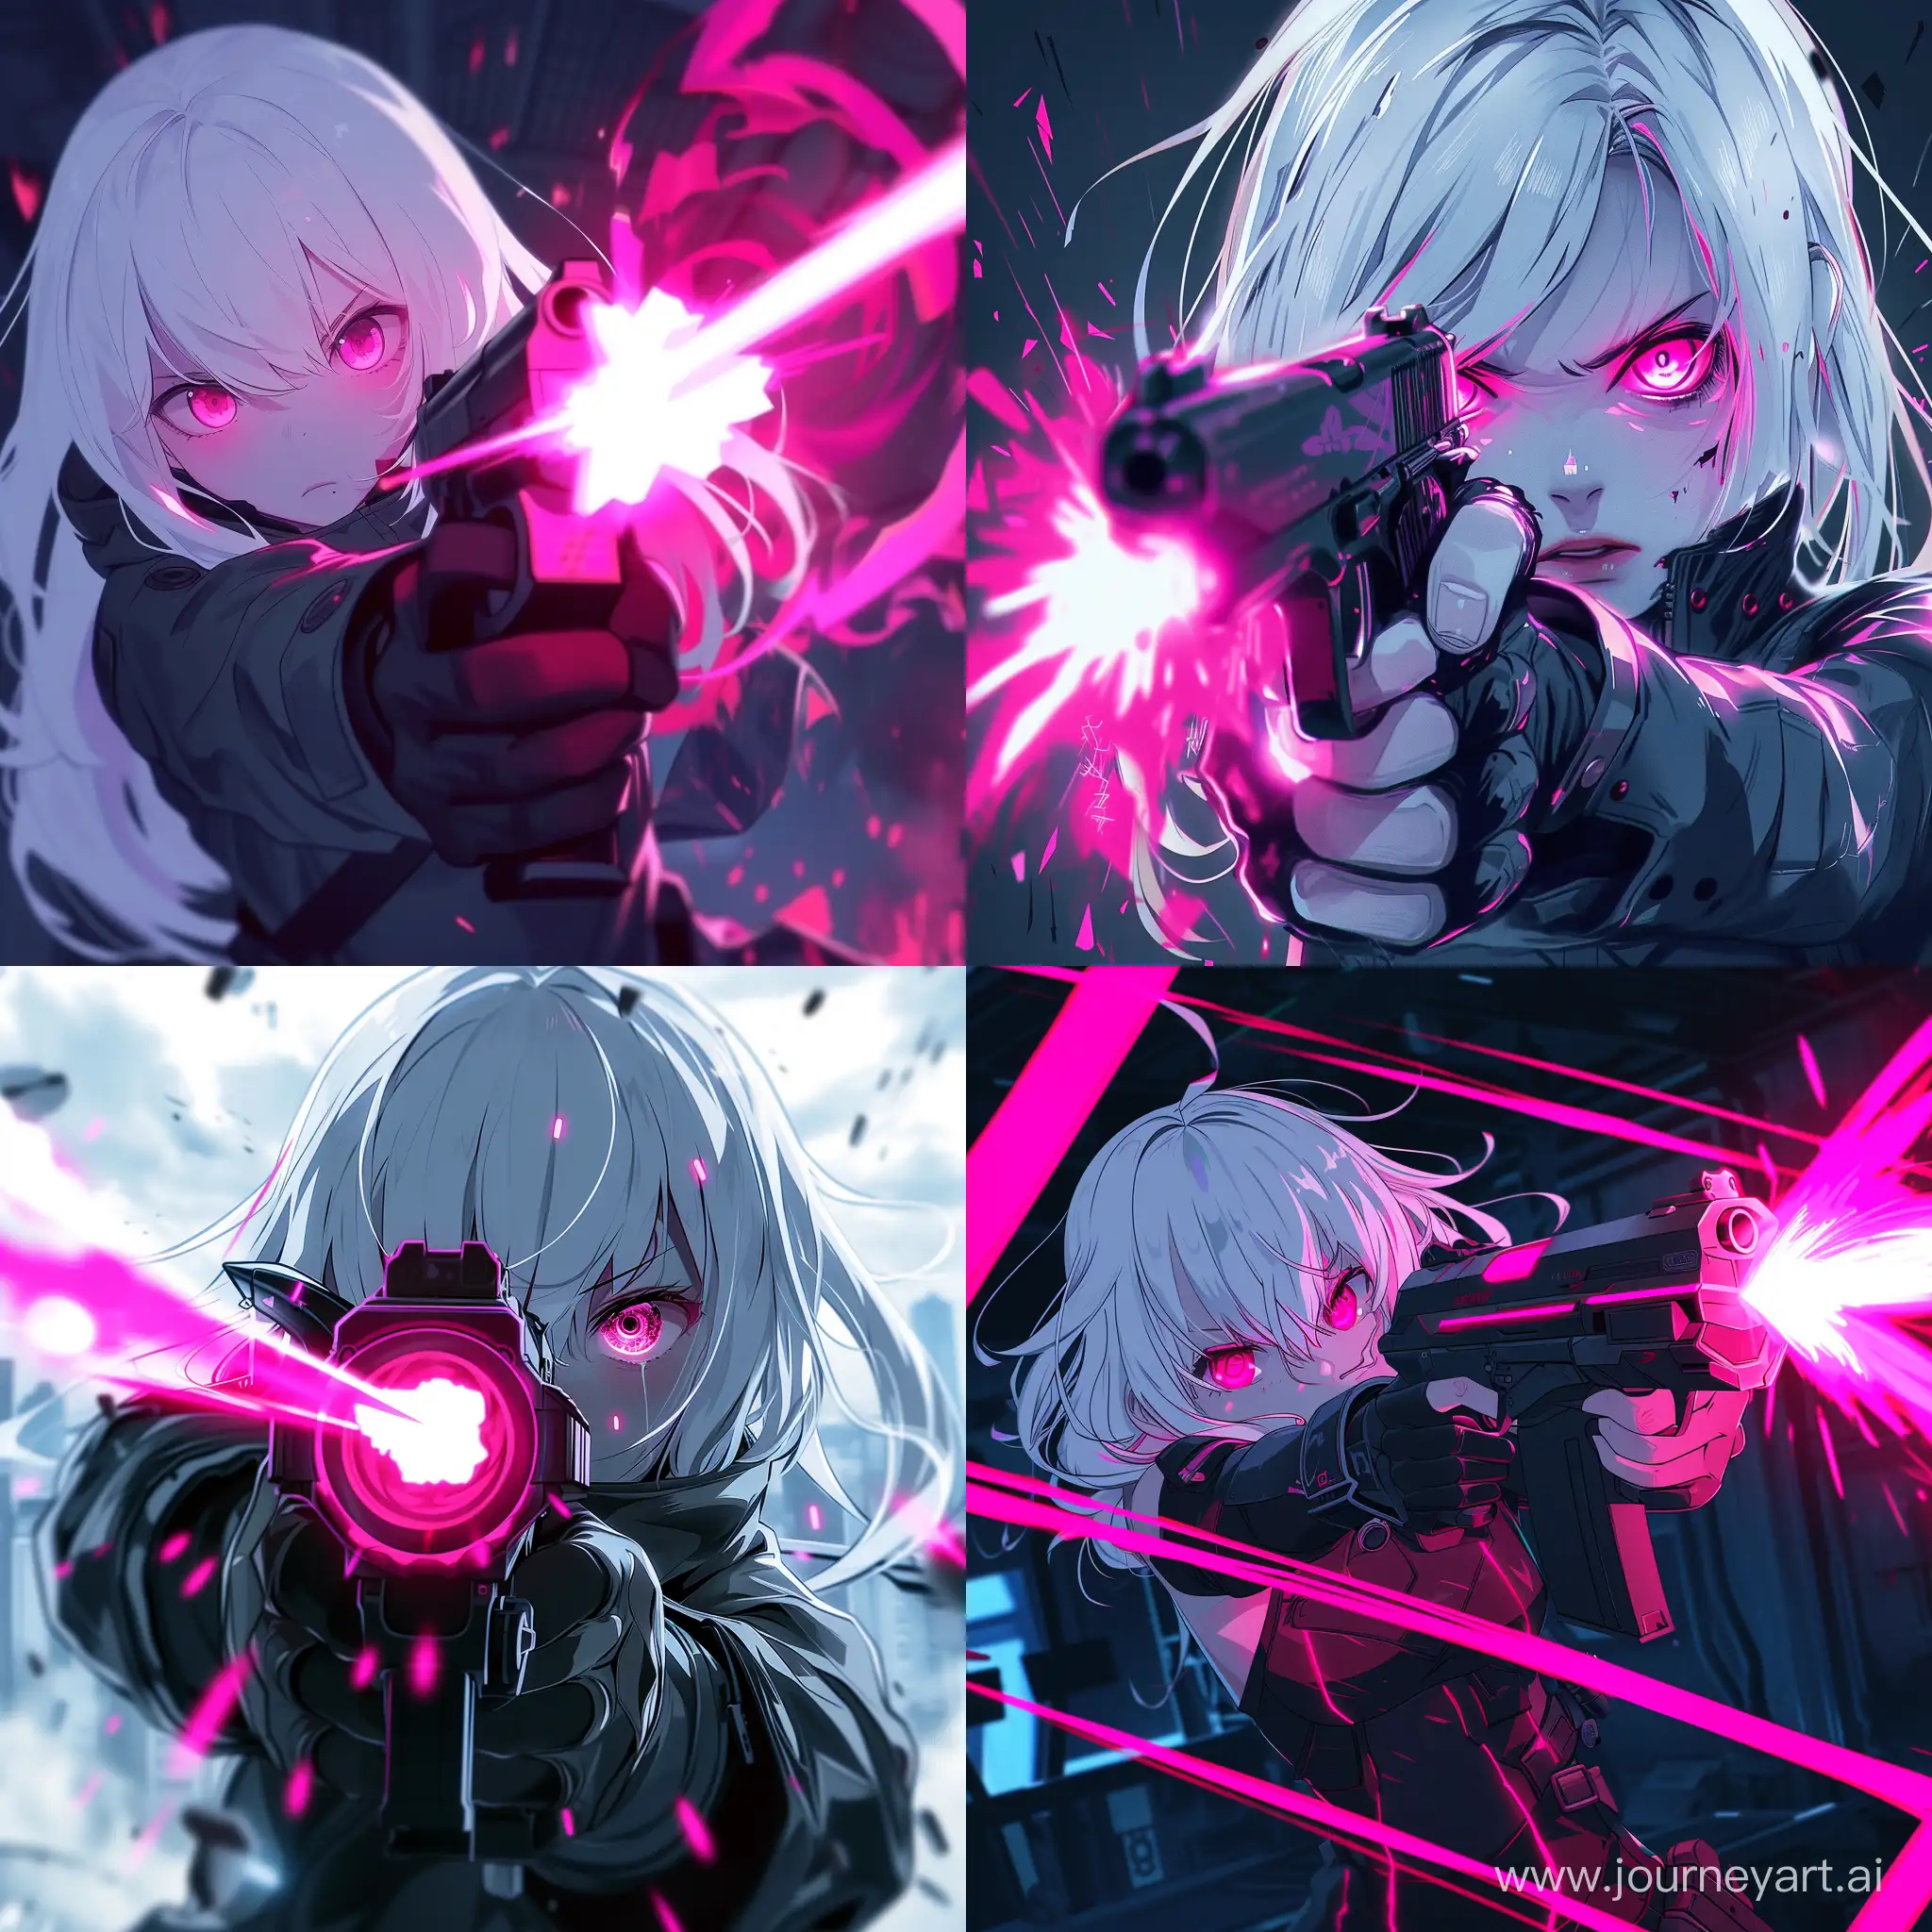 Futuristic-Neon-Glitch-Cutecore-Anime-Girl-with-Gun